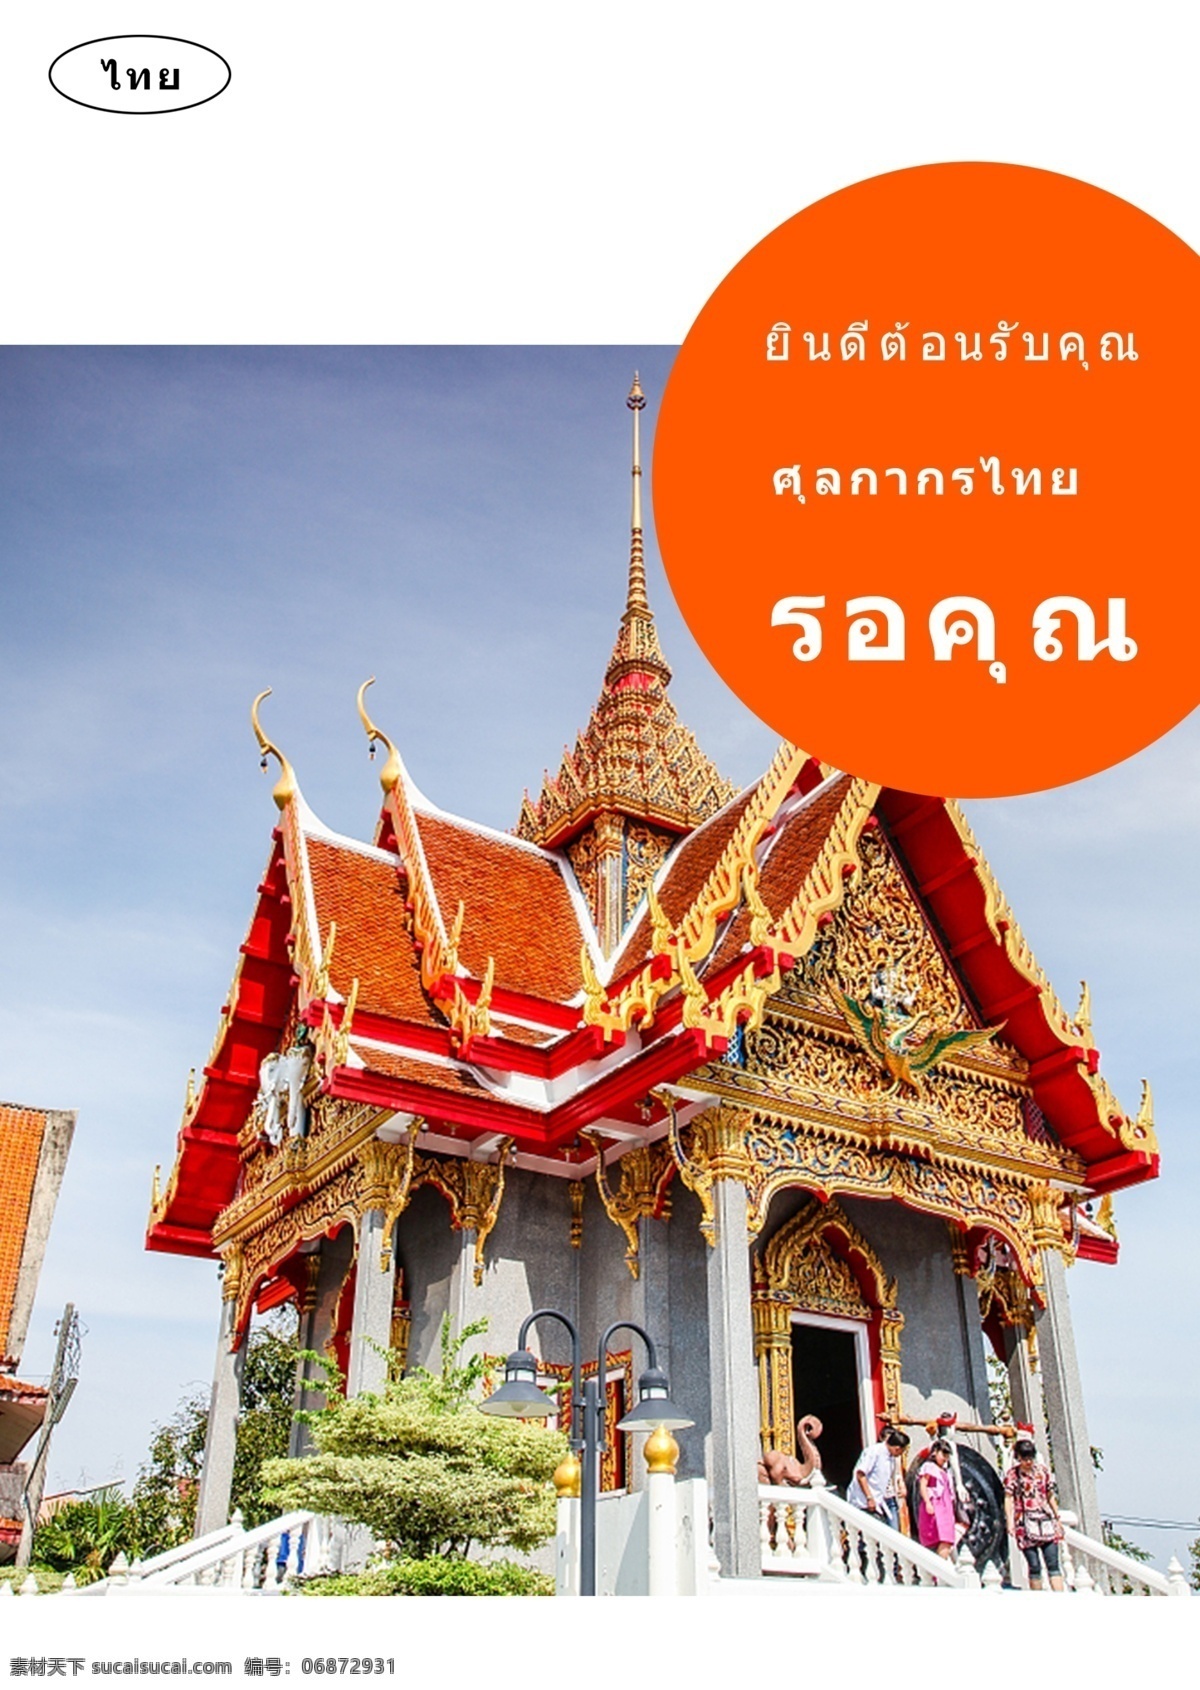 泰国 建筑 海报 推广 手绘 泰国风格 游览 风景区 四面佛 大皇宫 寺庙 拥护